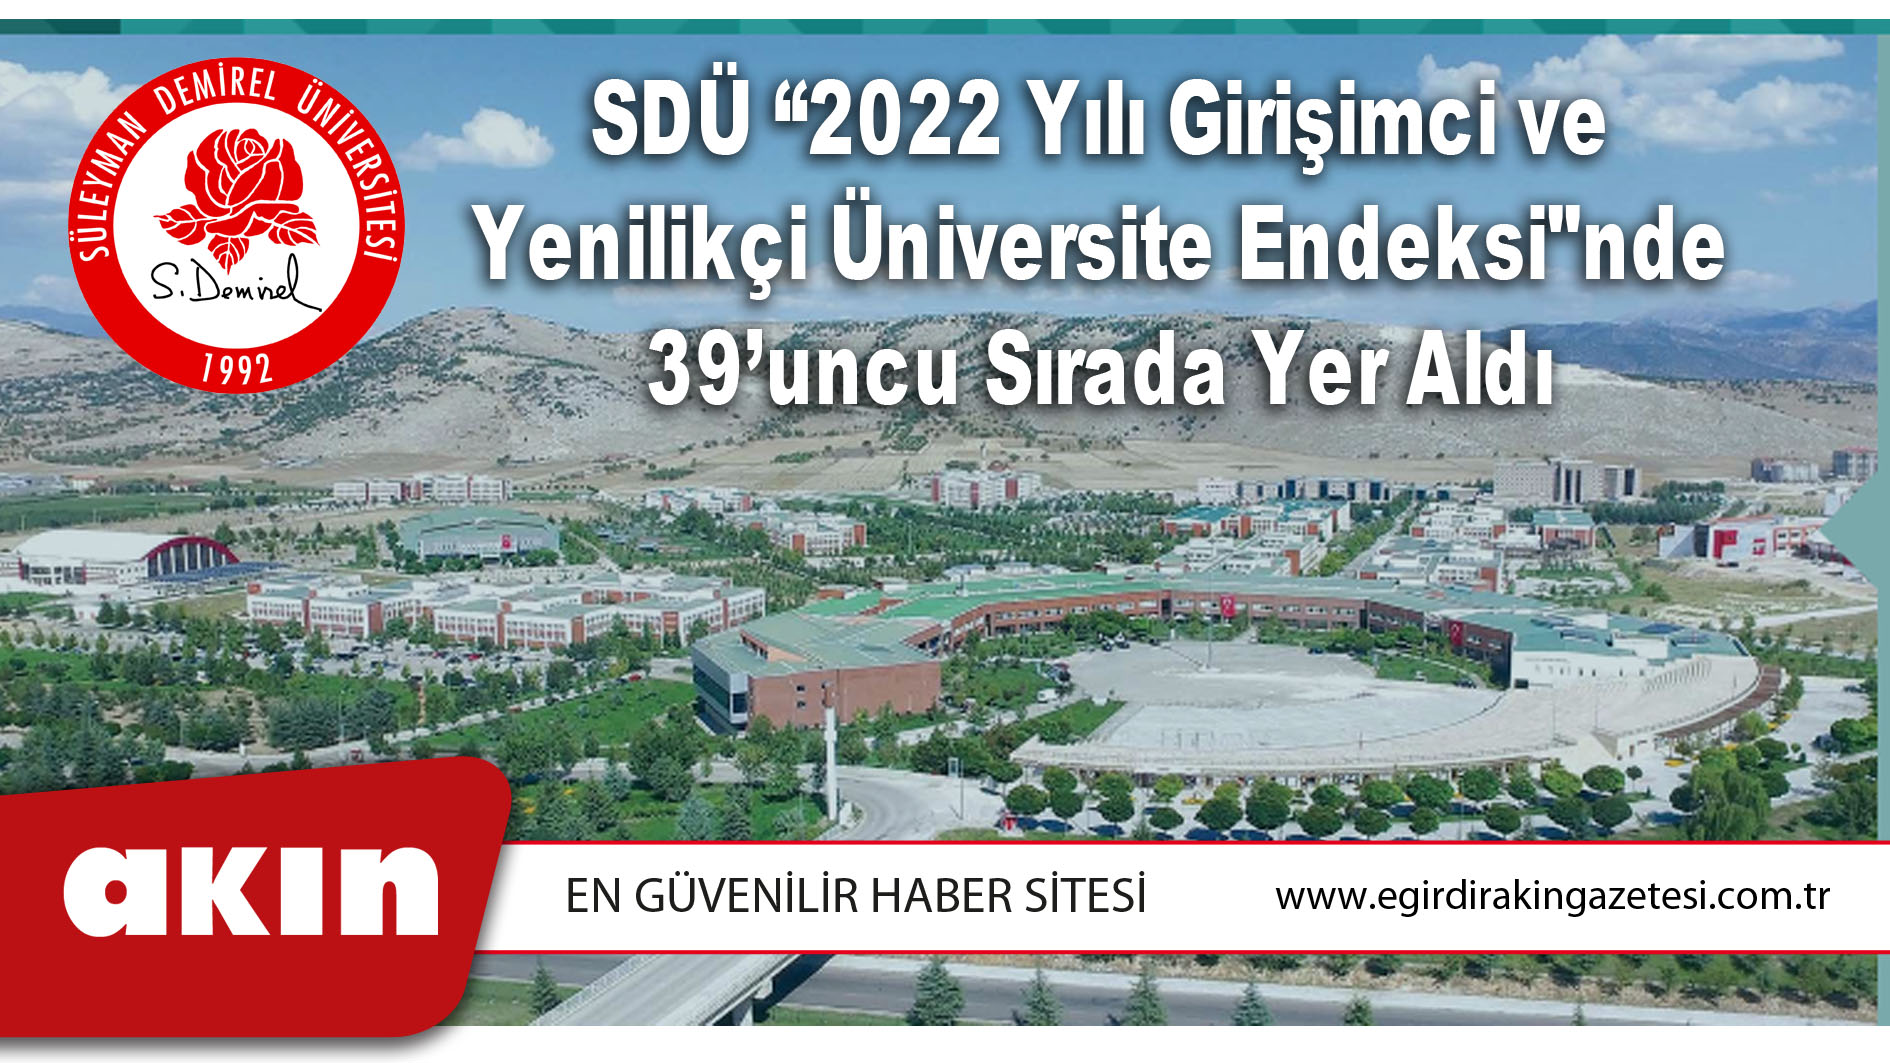 SDÜ “2022 Yılı Girişimci ve Yenilikçi Üniversite Endeksi